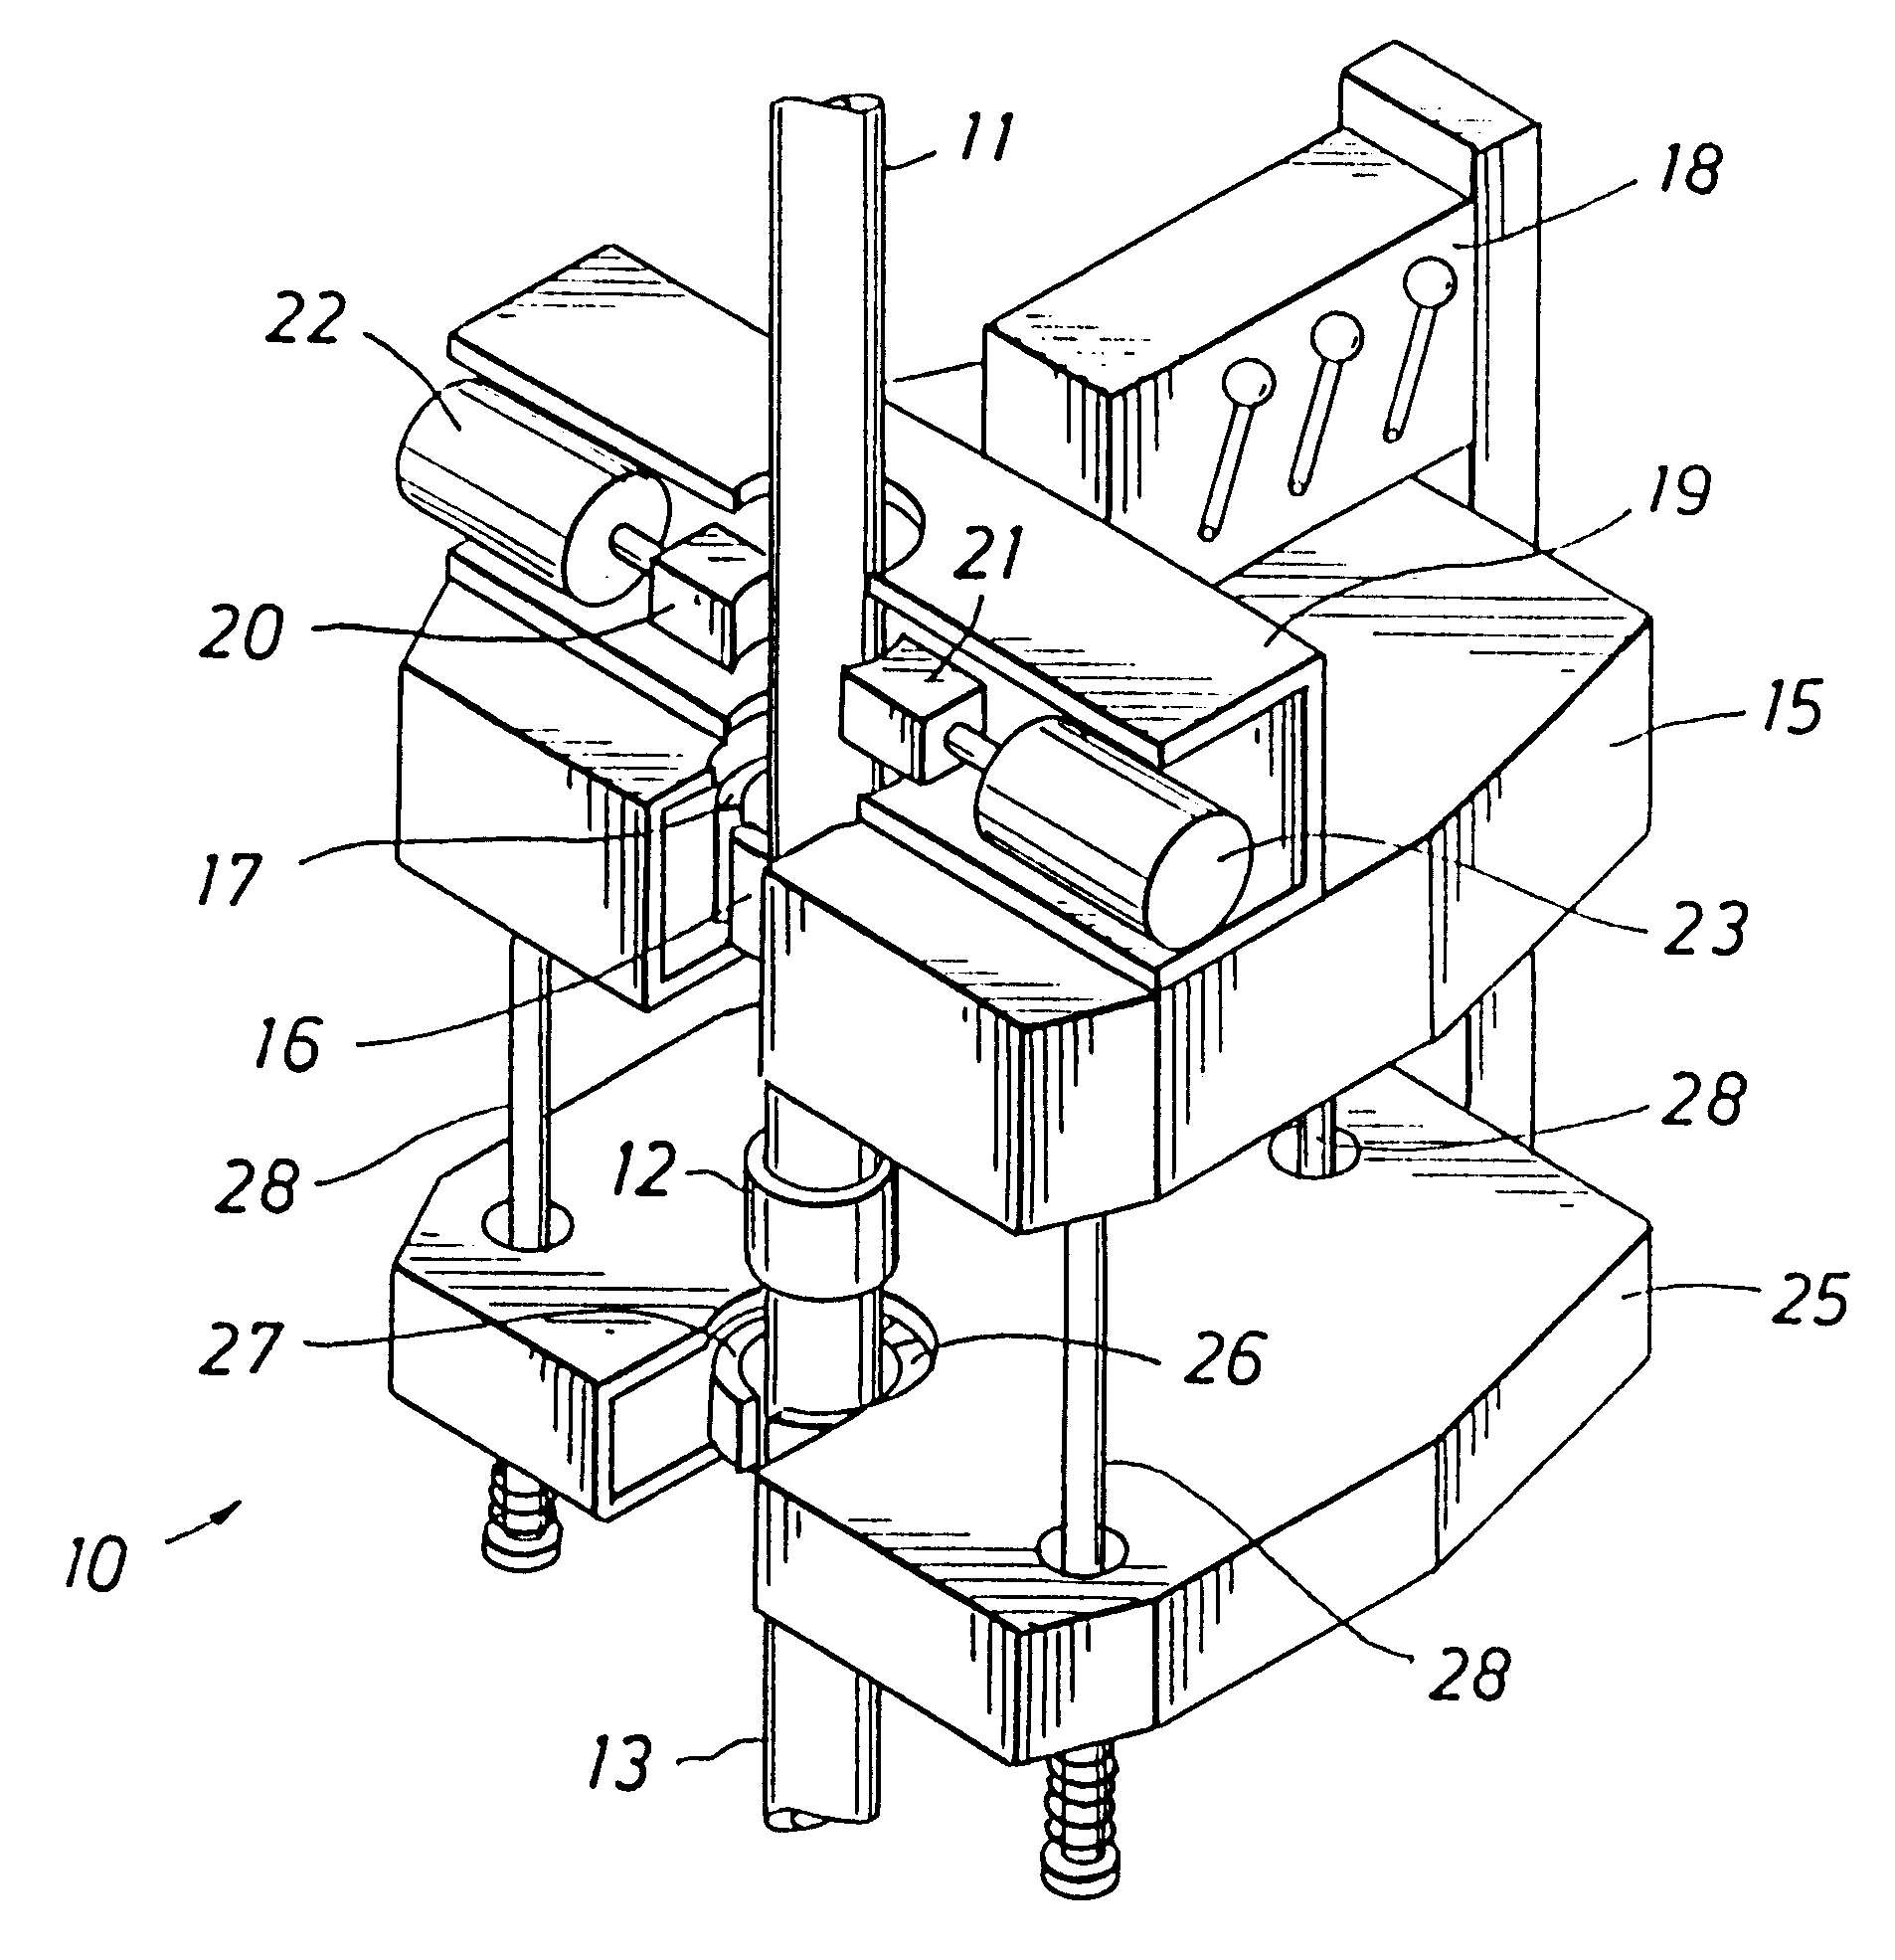 Mechanical torque amplifier